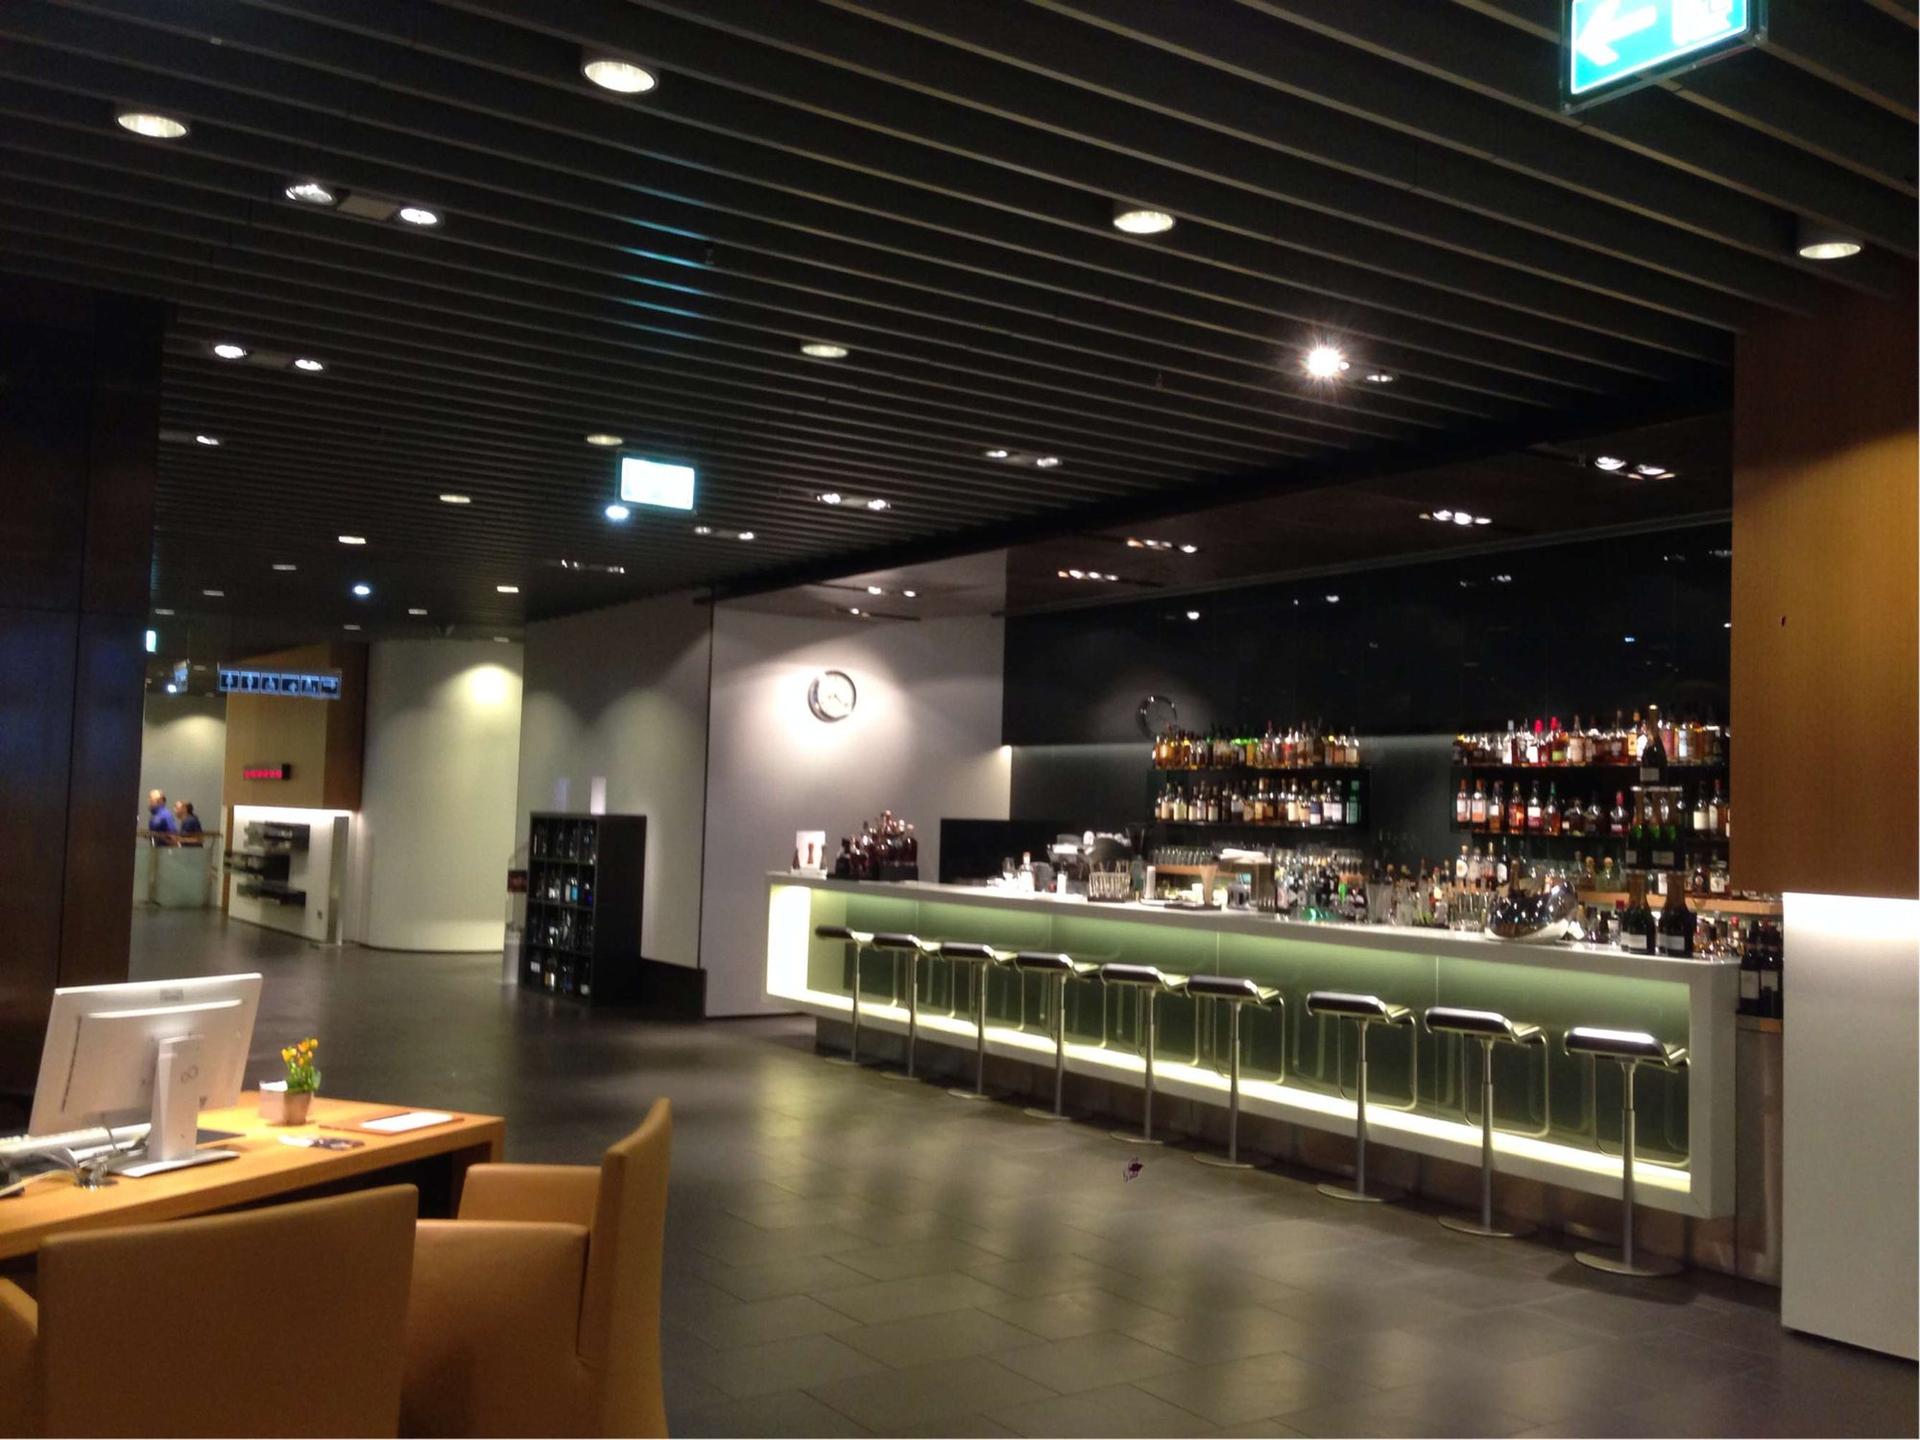 Lufthansa First Class Lounge (Schengen) image 2 of 12